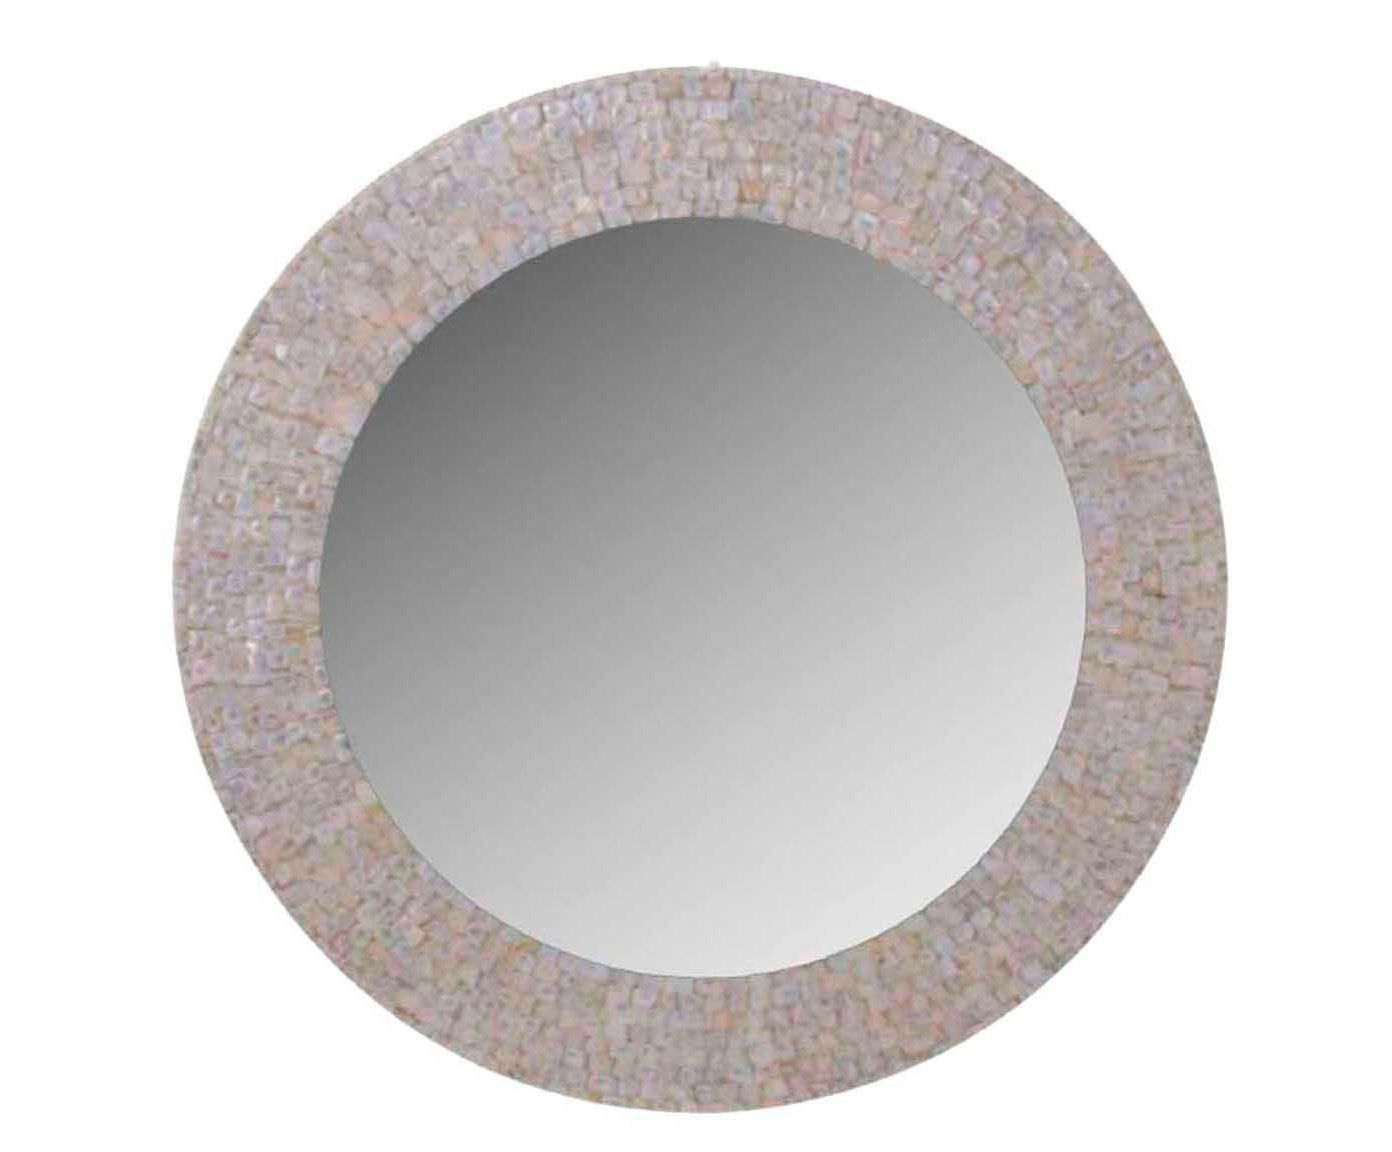 Moldura para espelho elegance circle - 50,5cm | Westwing.com.br